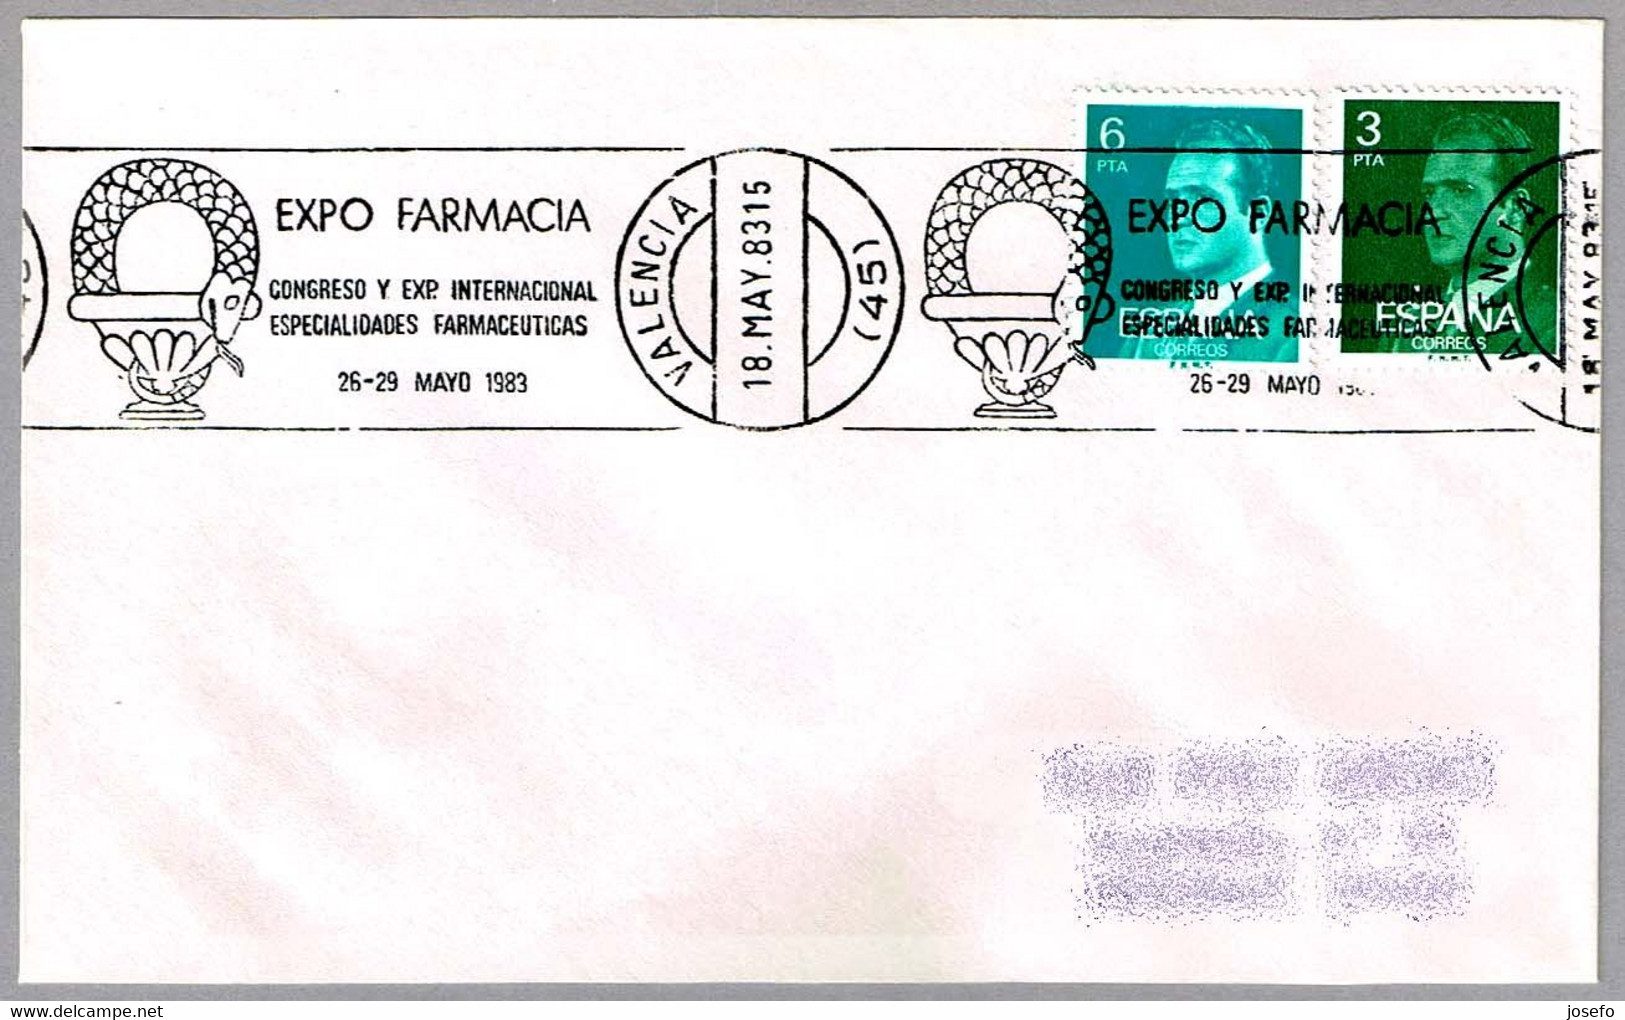 CONGRESO DE ESPECIALIDADES FARMACEUTICAS - Congress Of Pharmaceutical Specialties. Valencia 1983 - Pharmacy